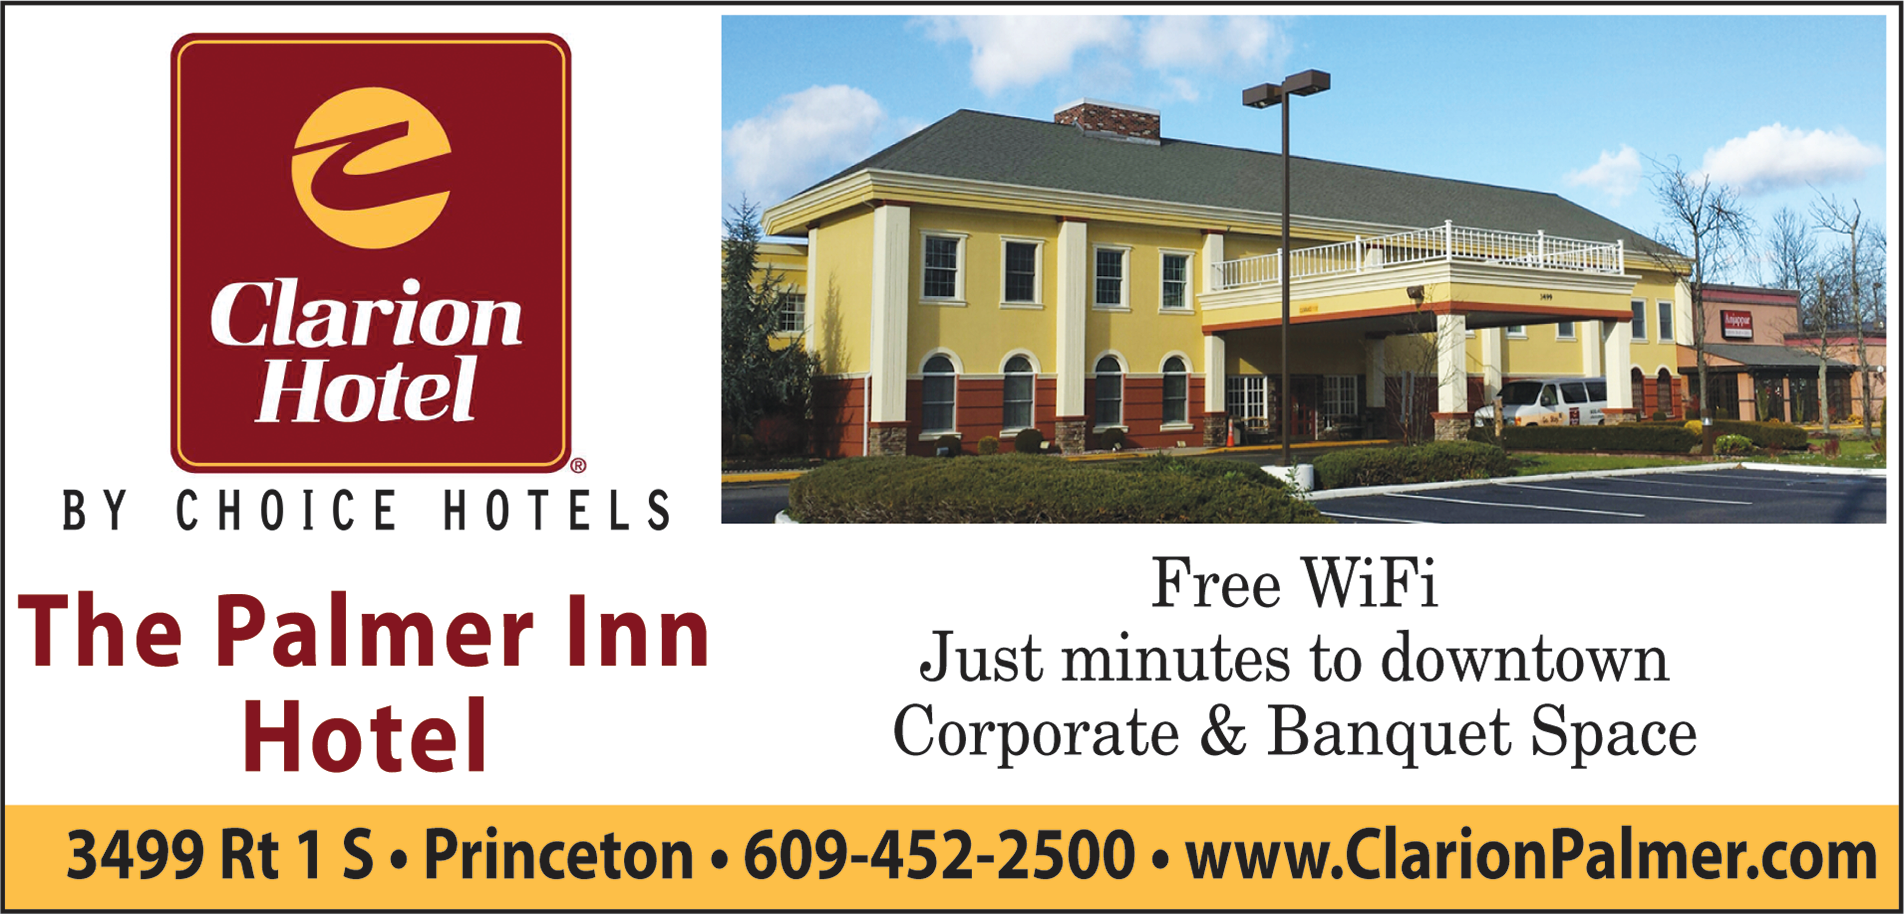 Clarion Hotel - The Palmer Inn Print Ad